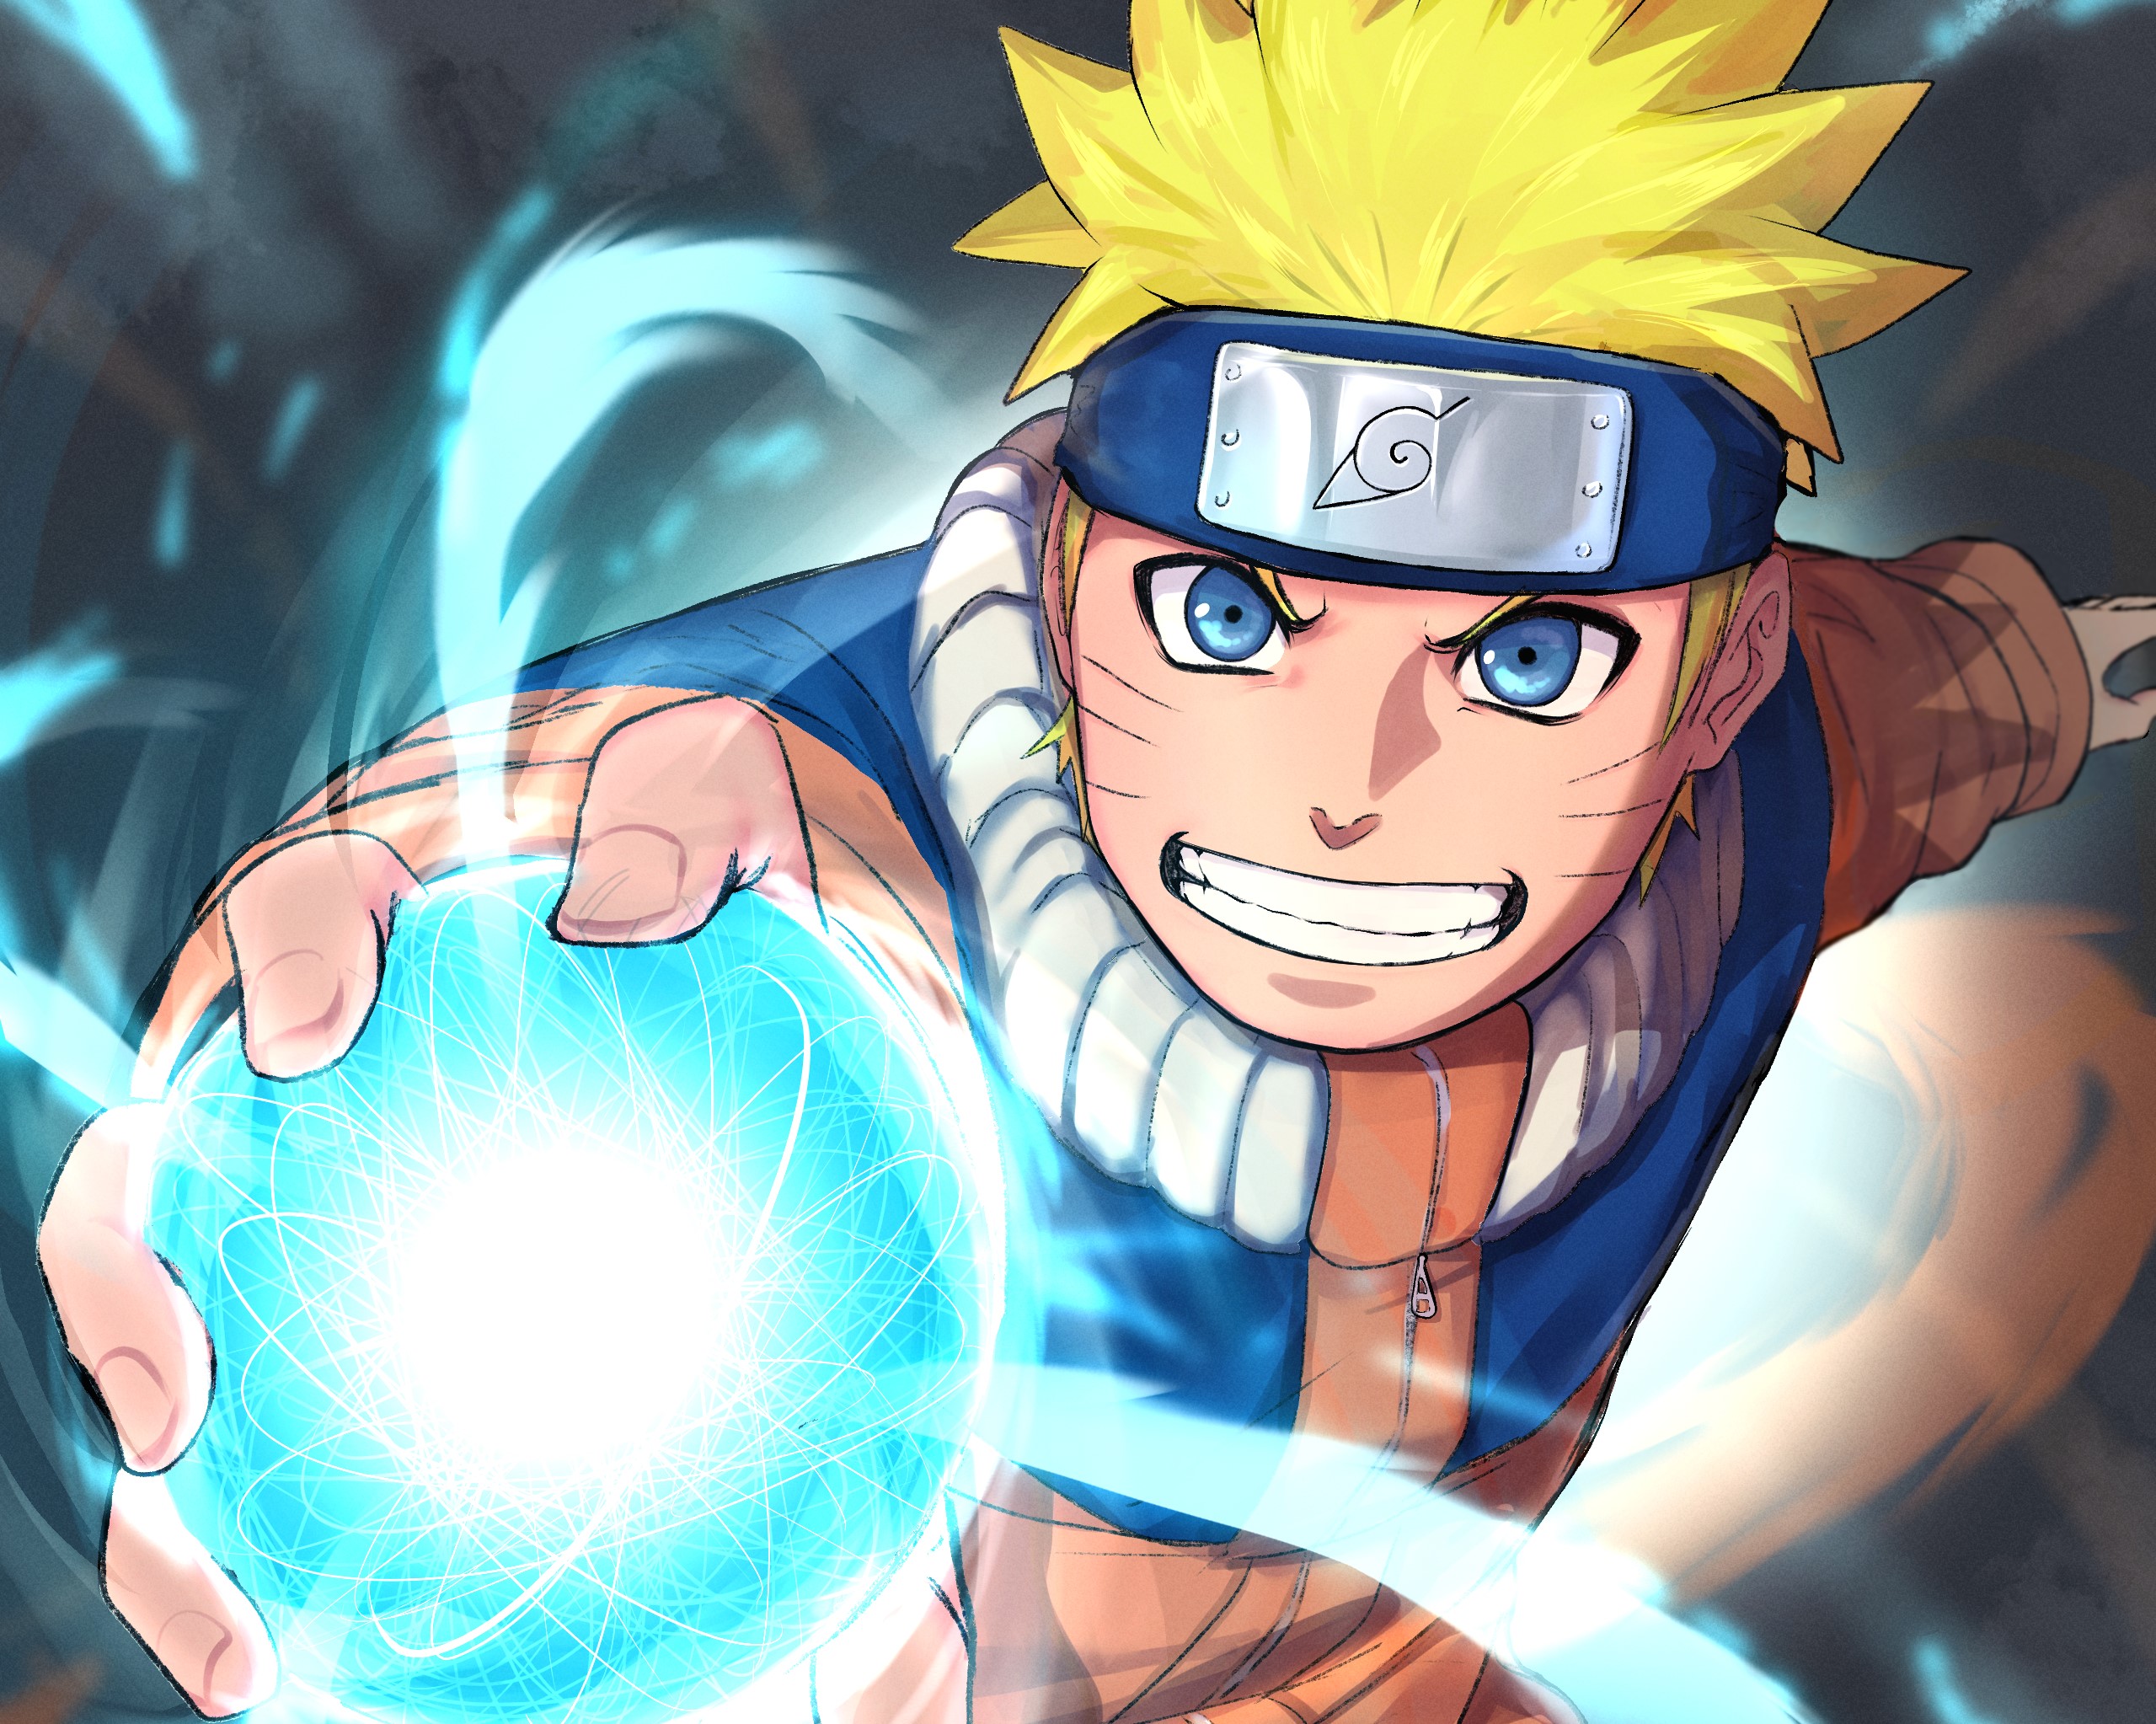 Rasengan - Xem hình ảnh về Rasengan để khám phá phép thuật đầy sức mạnh và diệu kỳ của Naruto. Kỹ năng này đã giúp anh ta thắng trận trong nhiều cuộc chiến khốc liệt. Hãy cùng tìm hiểu chi tiết về Rasengan trong Naruto.